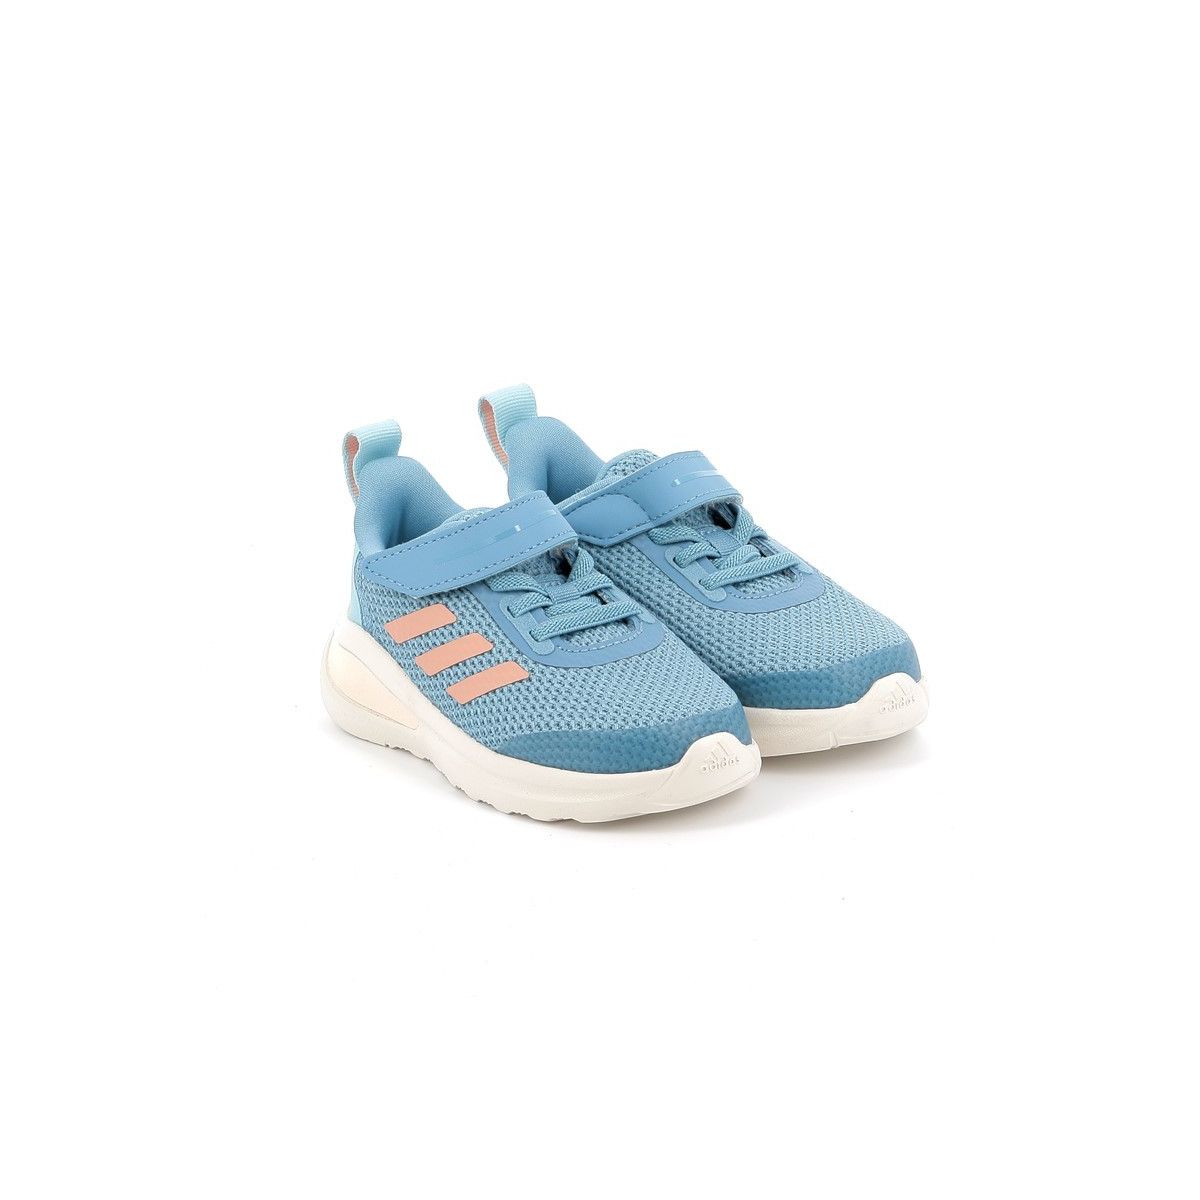 Παιδικό Αθλητικό για Κορίτσι Adidas Fortarun Shoes Υφασμάτινο Χρώματος Γαλάζιο FY1464